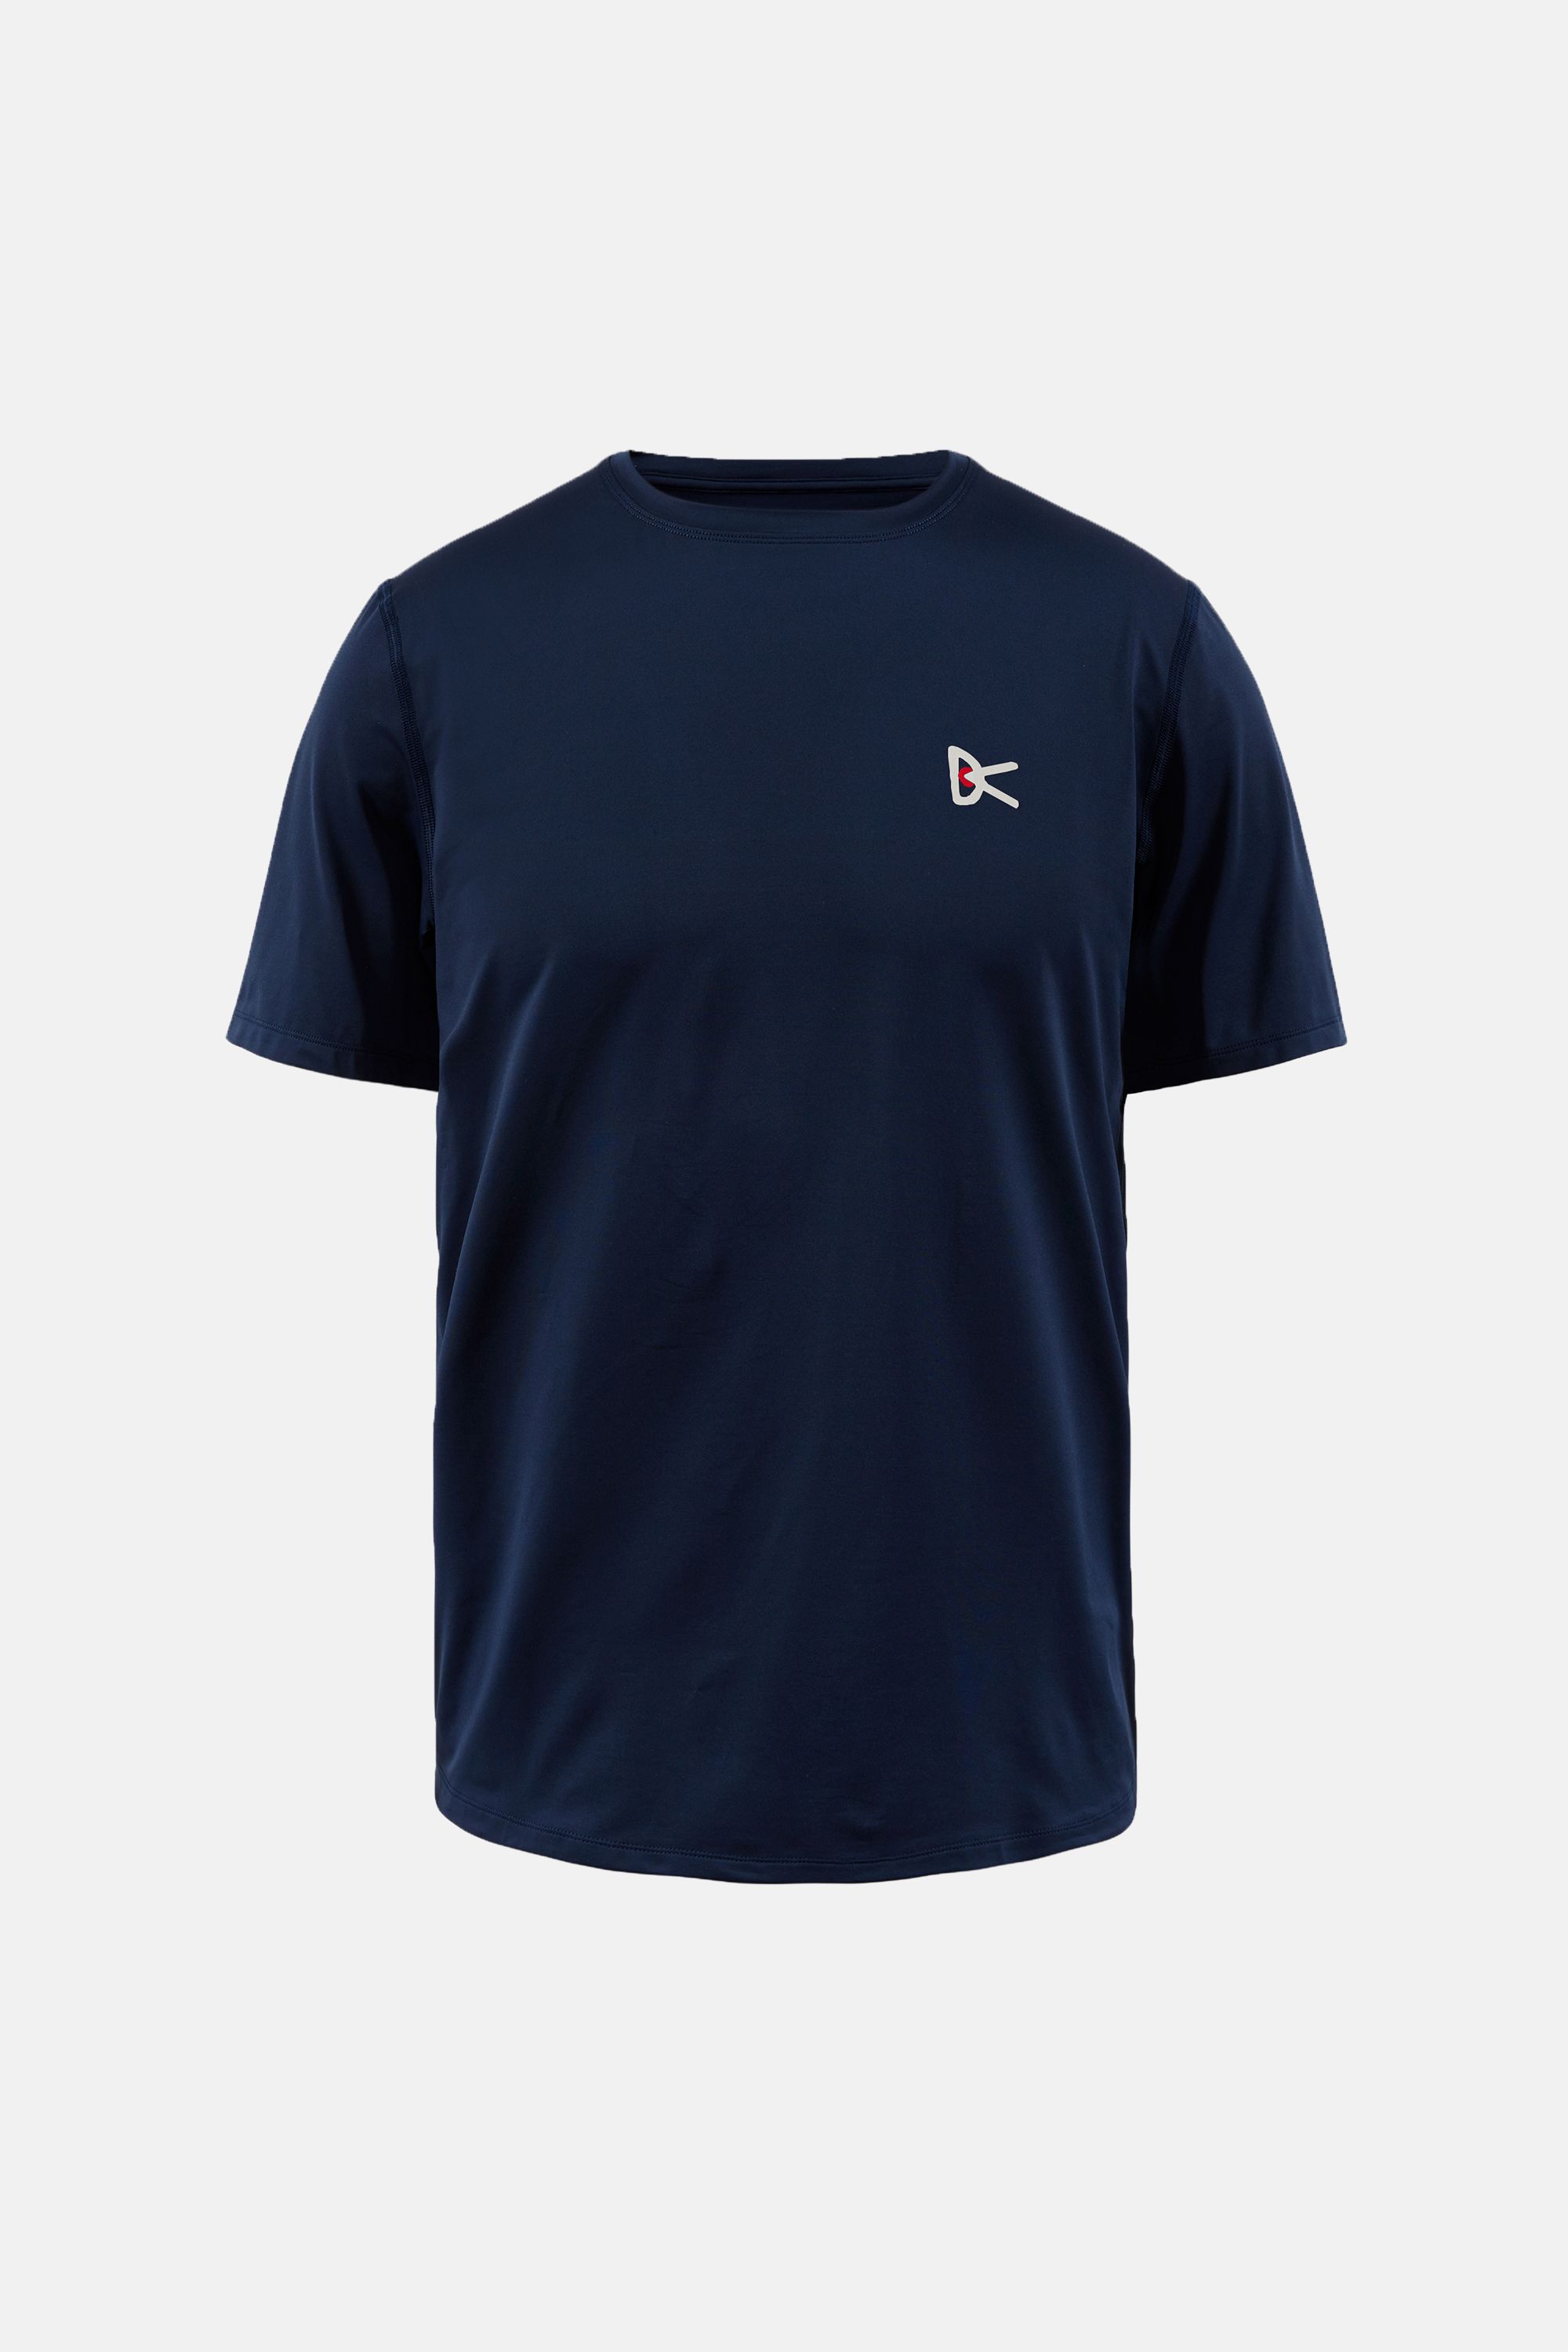 Deva Short Sleeve T-Shirt, Navy